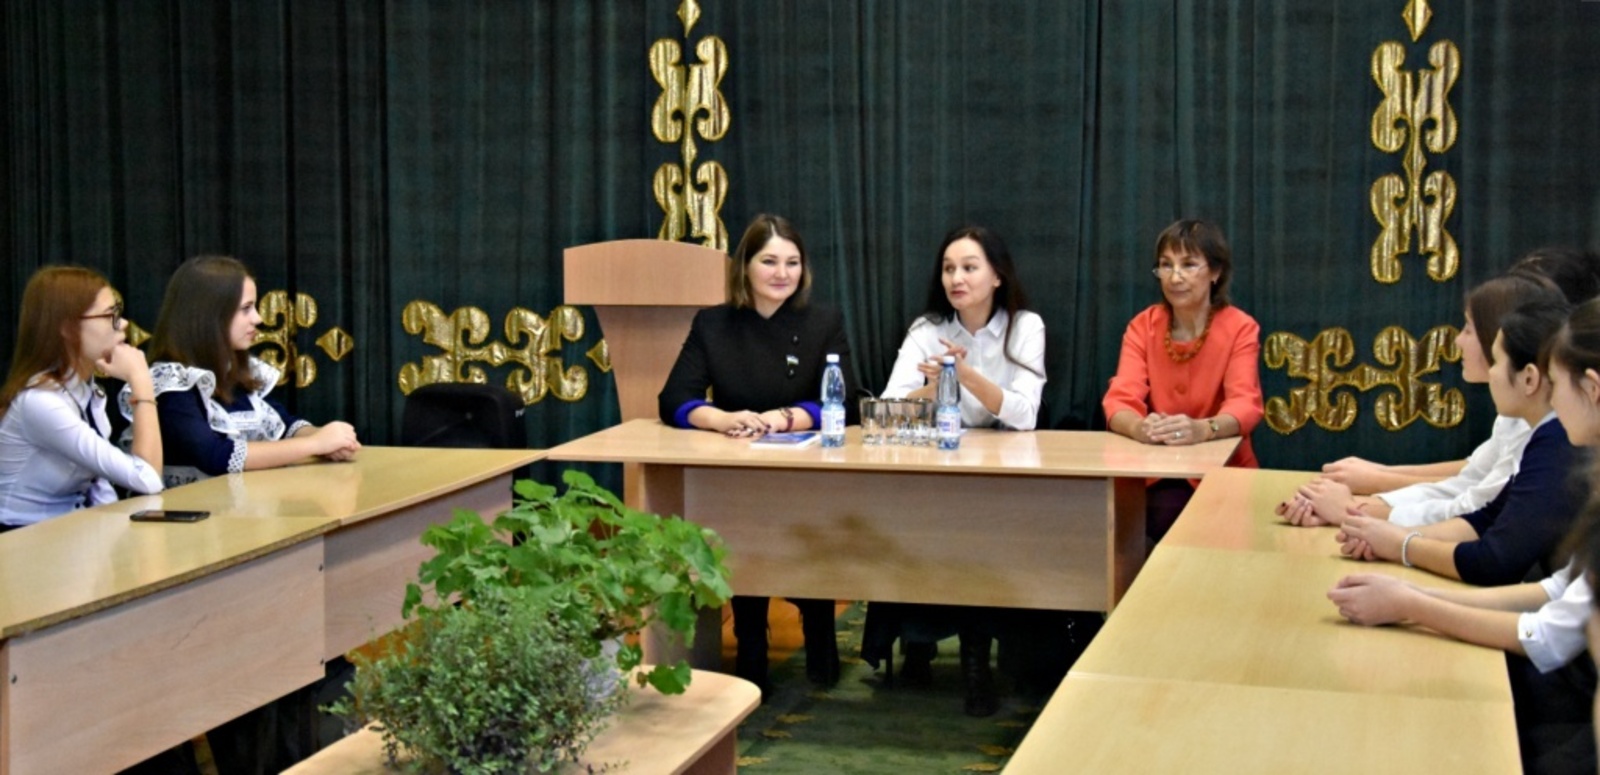 Классный час для школьников провели депутаты А.Р. Гареева,  Р.Ю. Бабич и директор БГИ № 3 Р.С. Давлетова (слева направо).